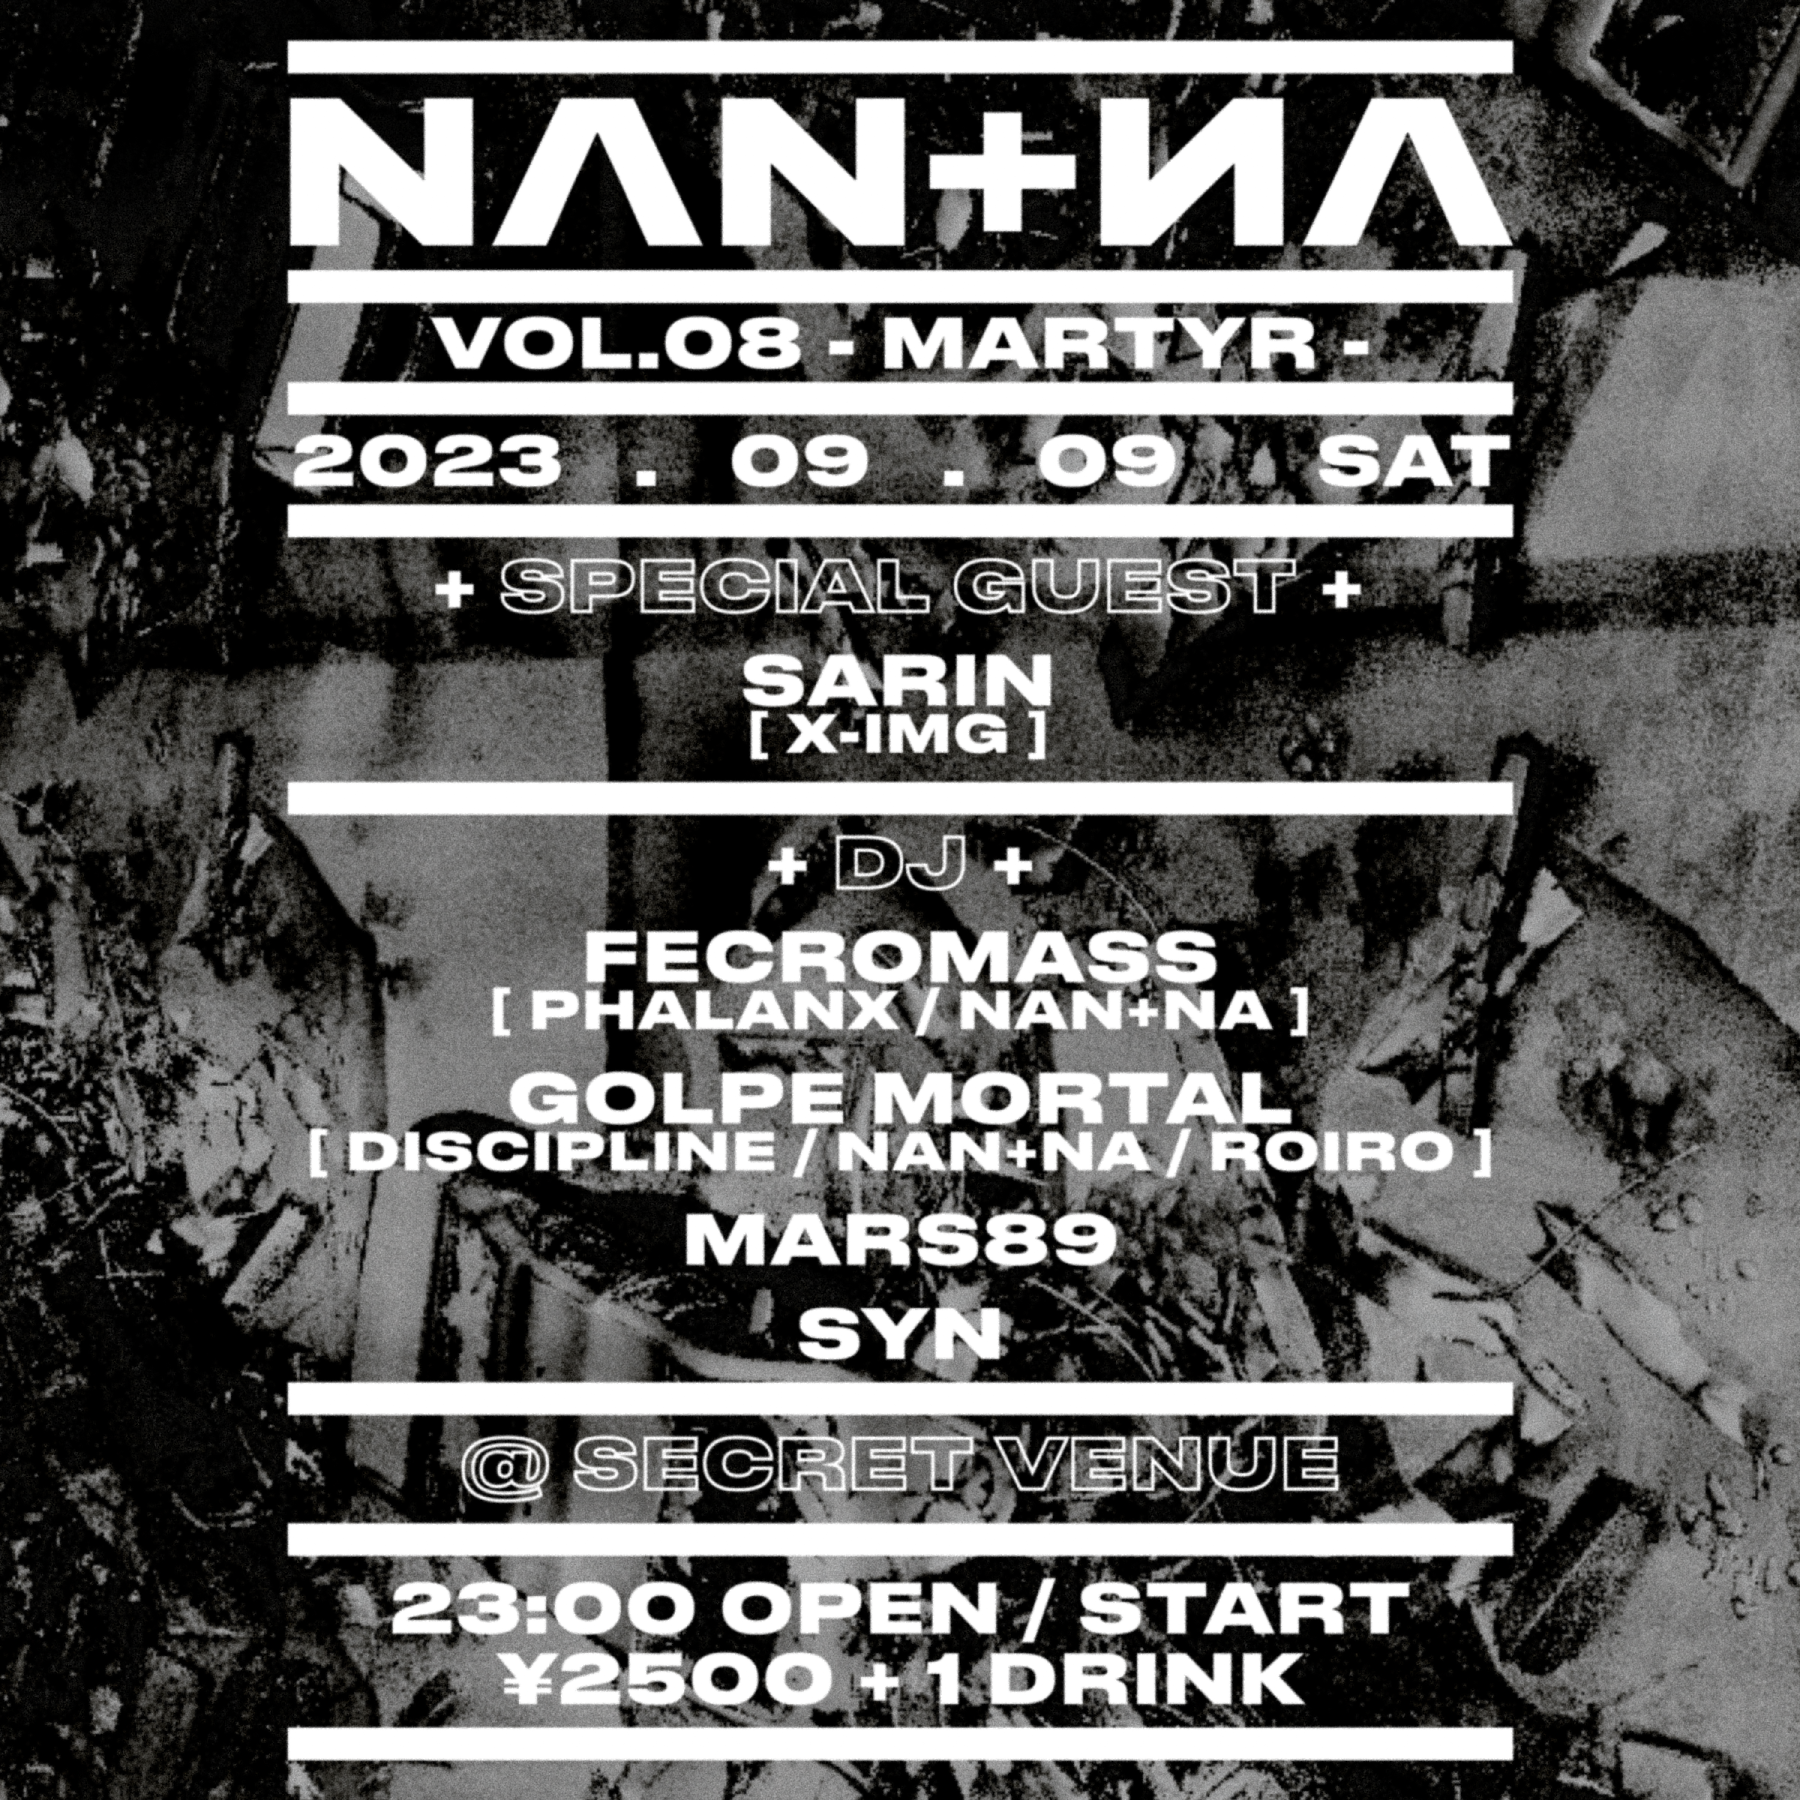 NAN+NA Vol.08 - MARTYR - - フライヤー表